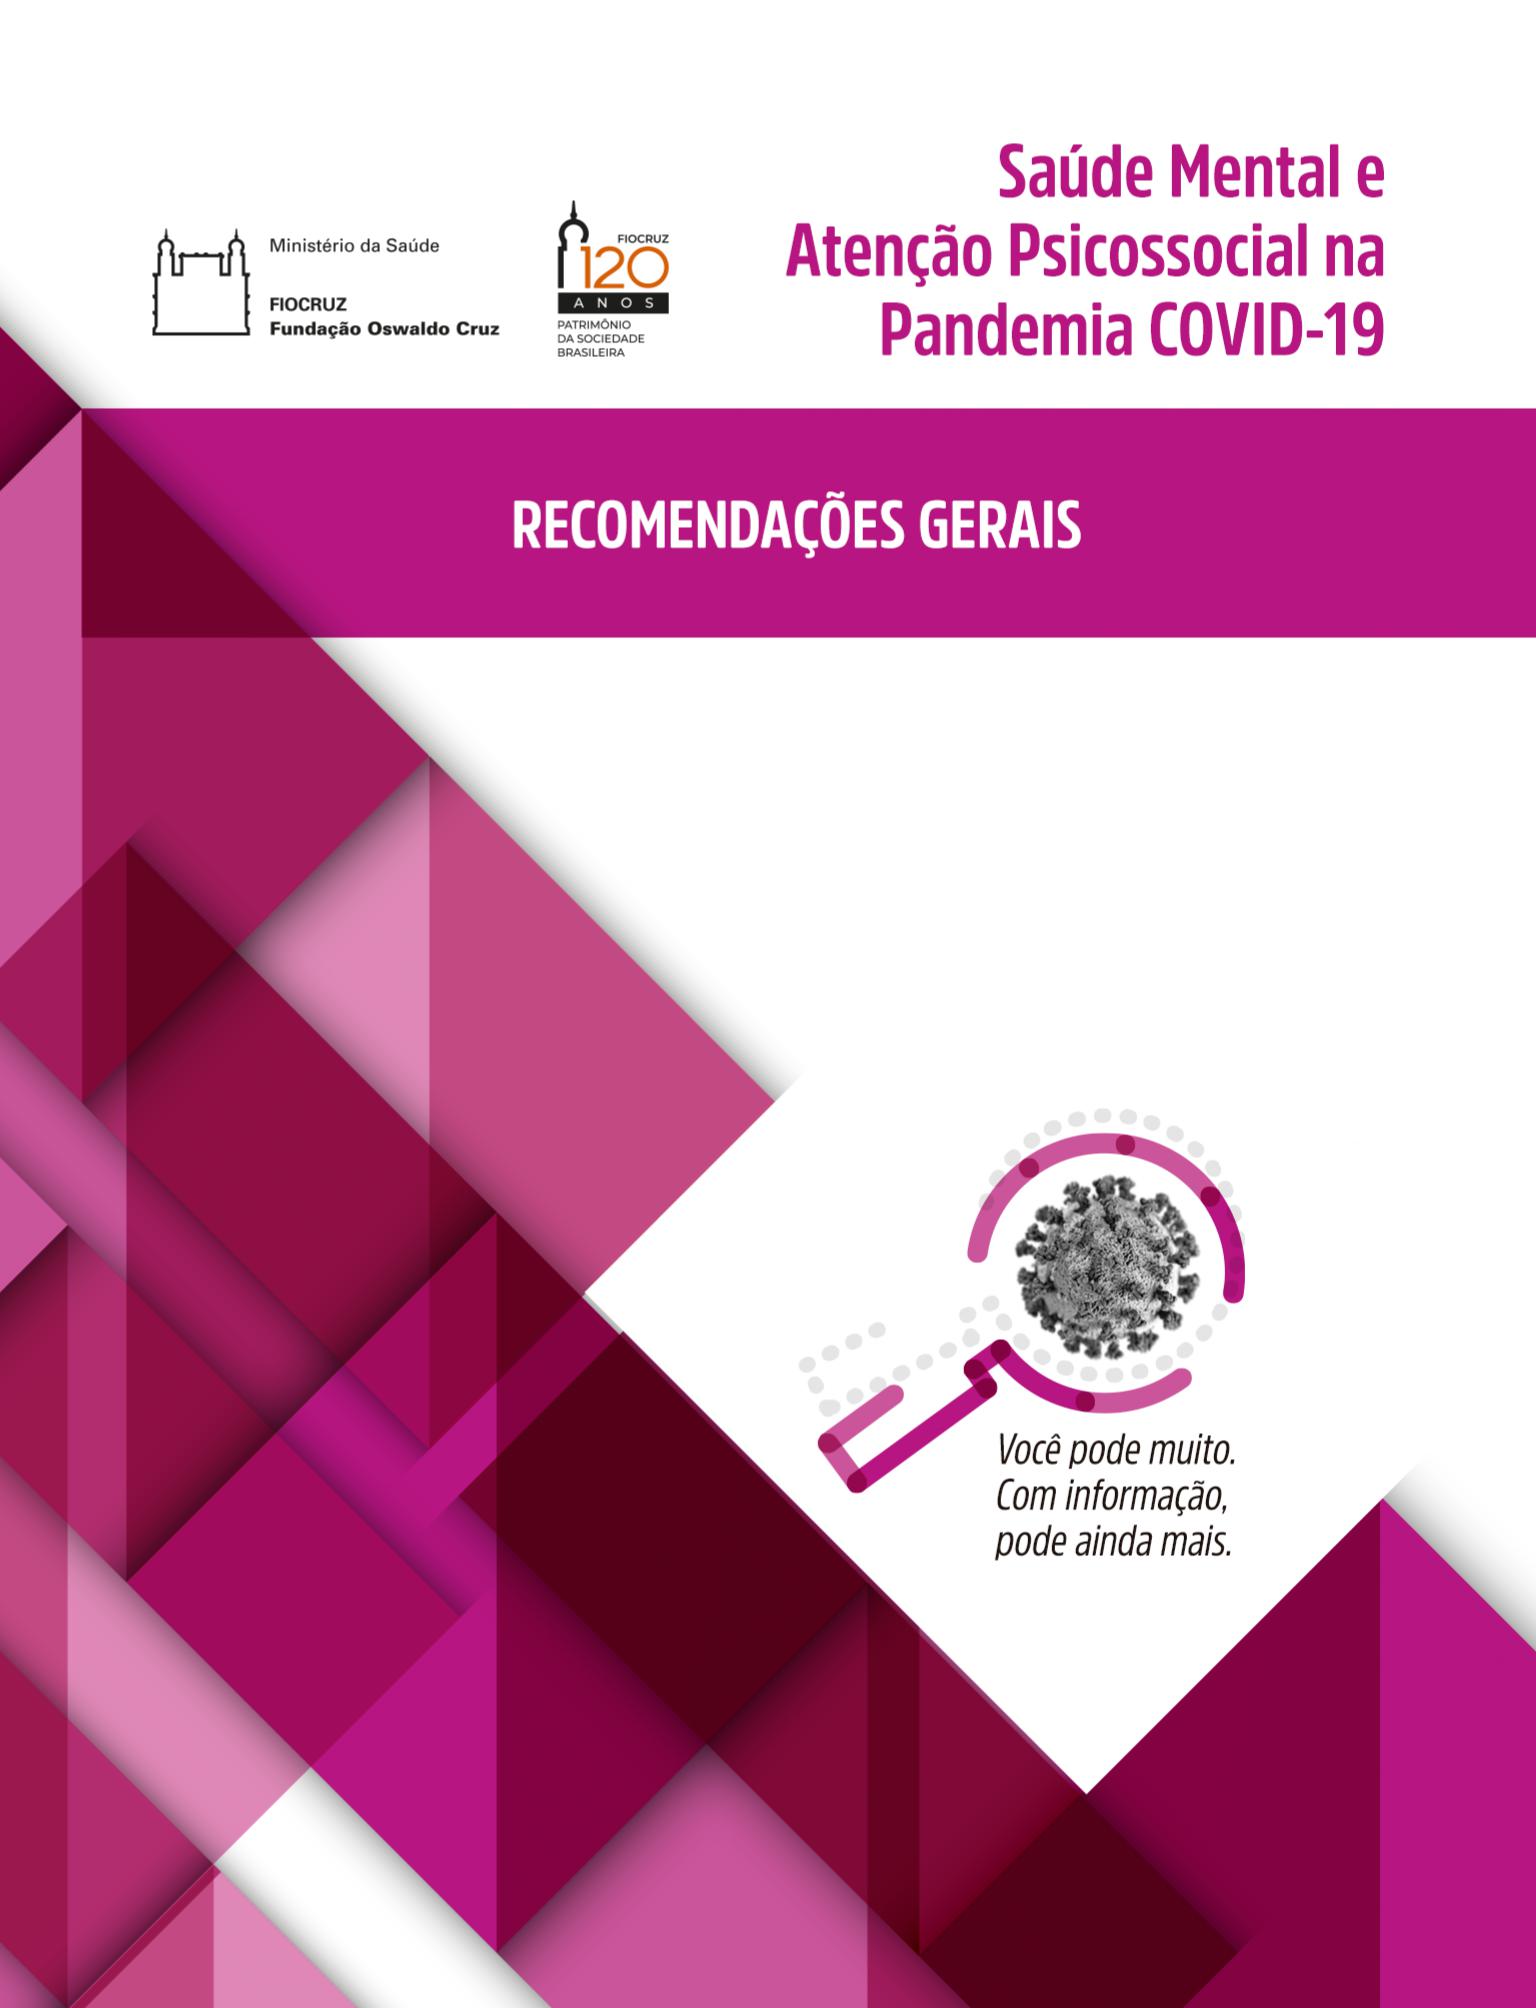 Saúde Mental e Atenção Psicossocial na Pandemia Covid-19 – recomendações gerais